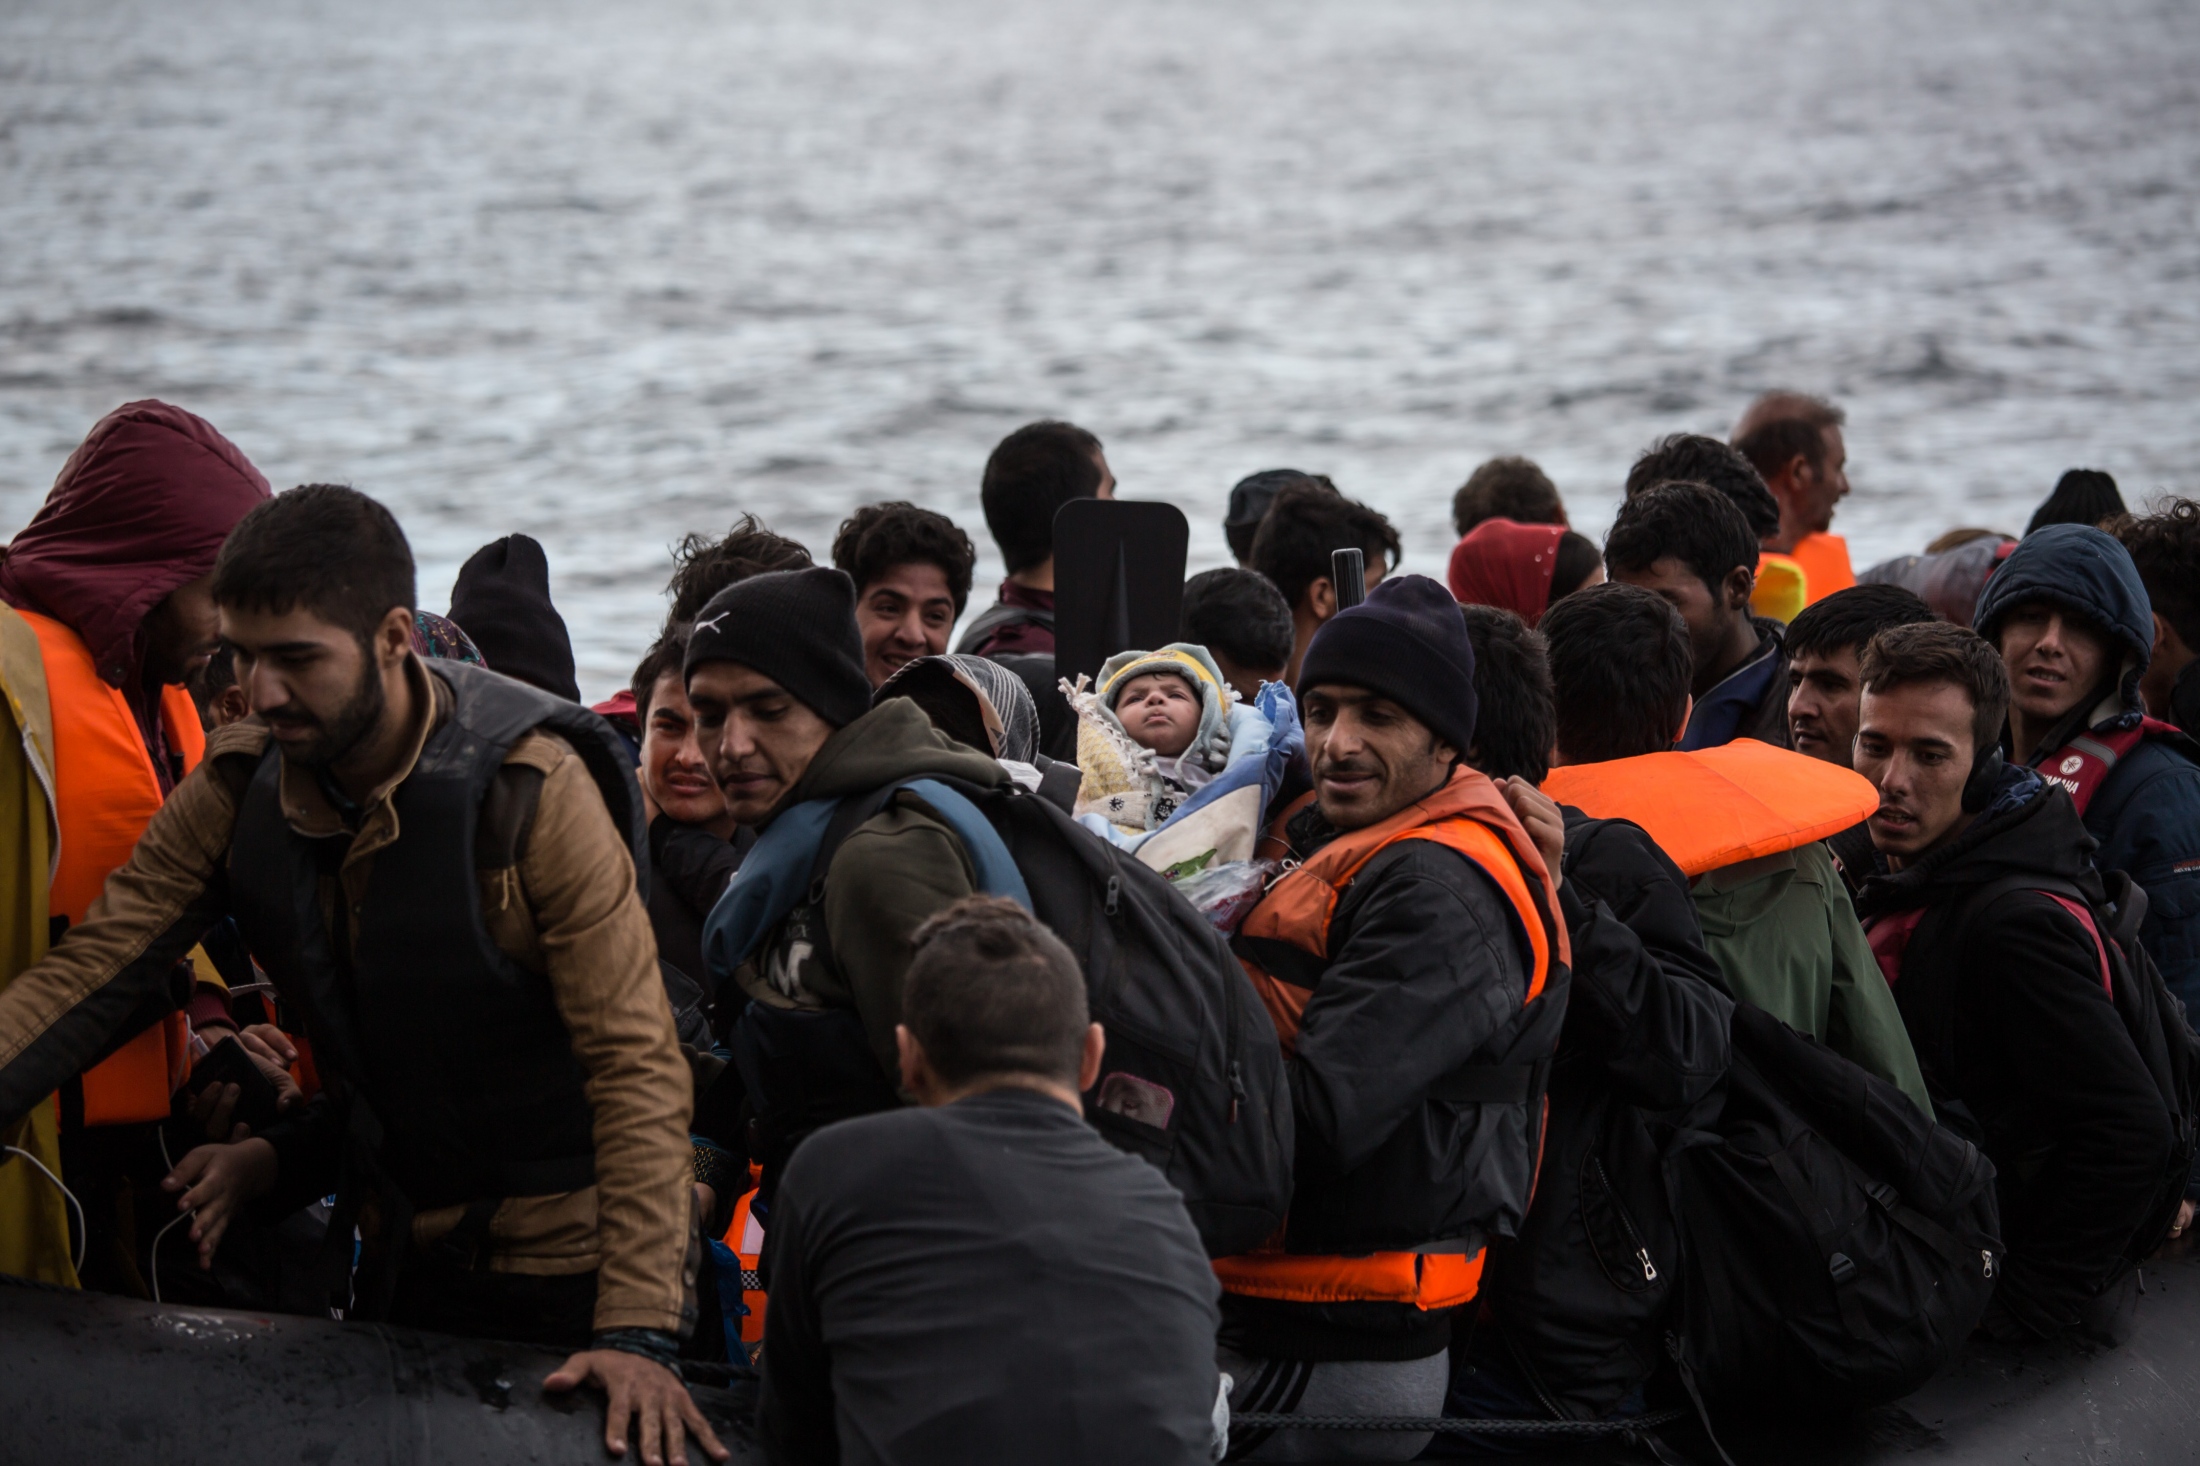 Migration crisis